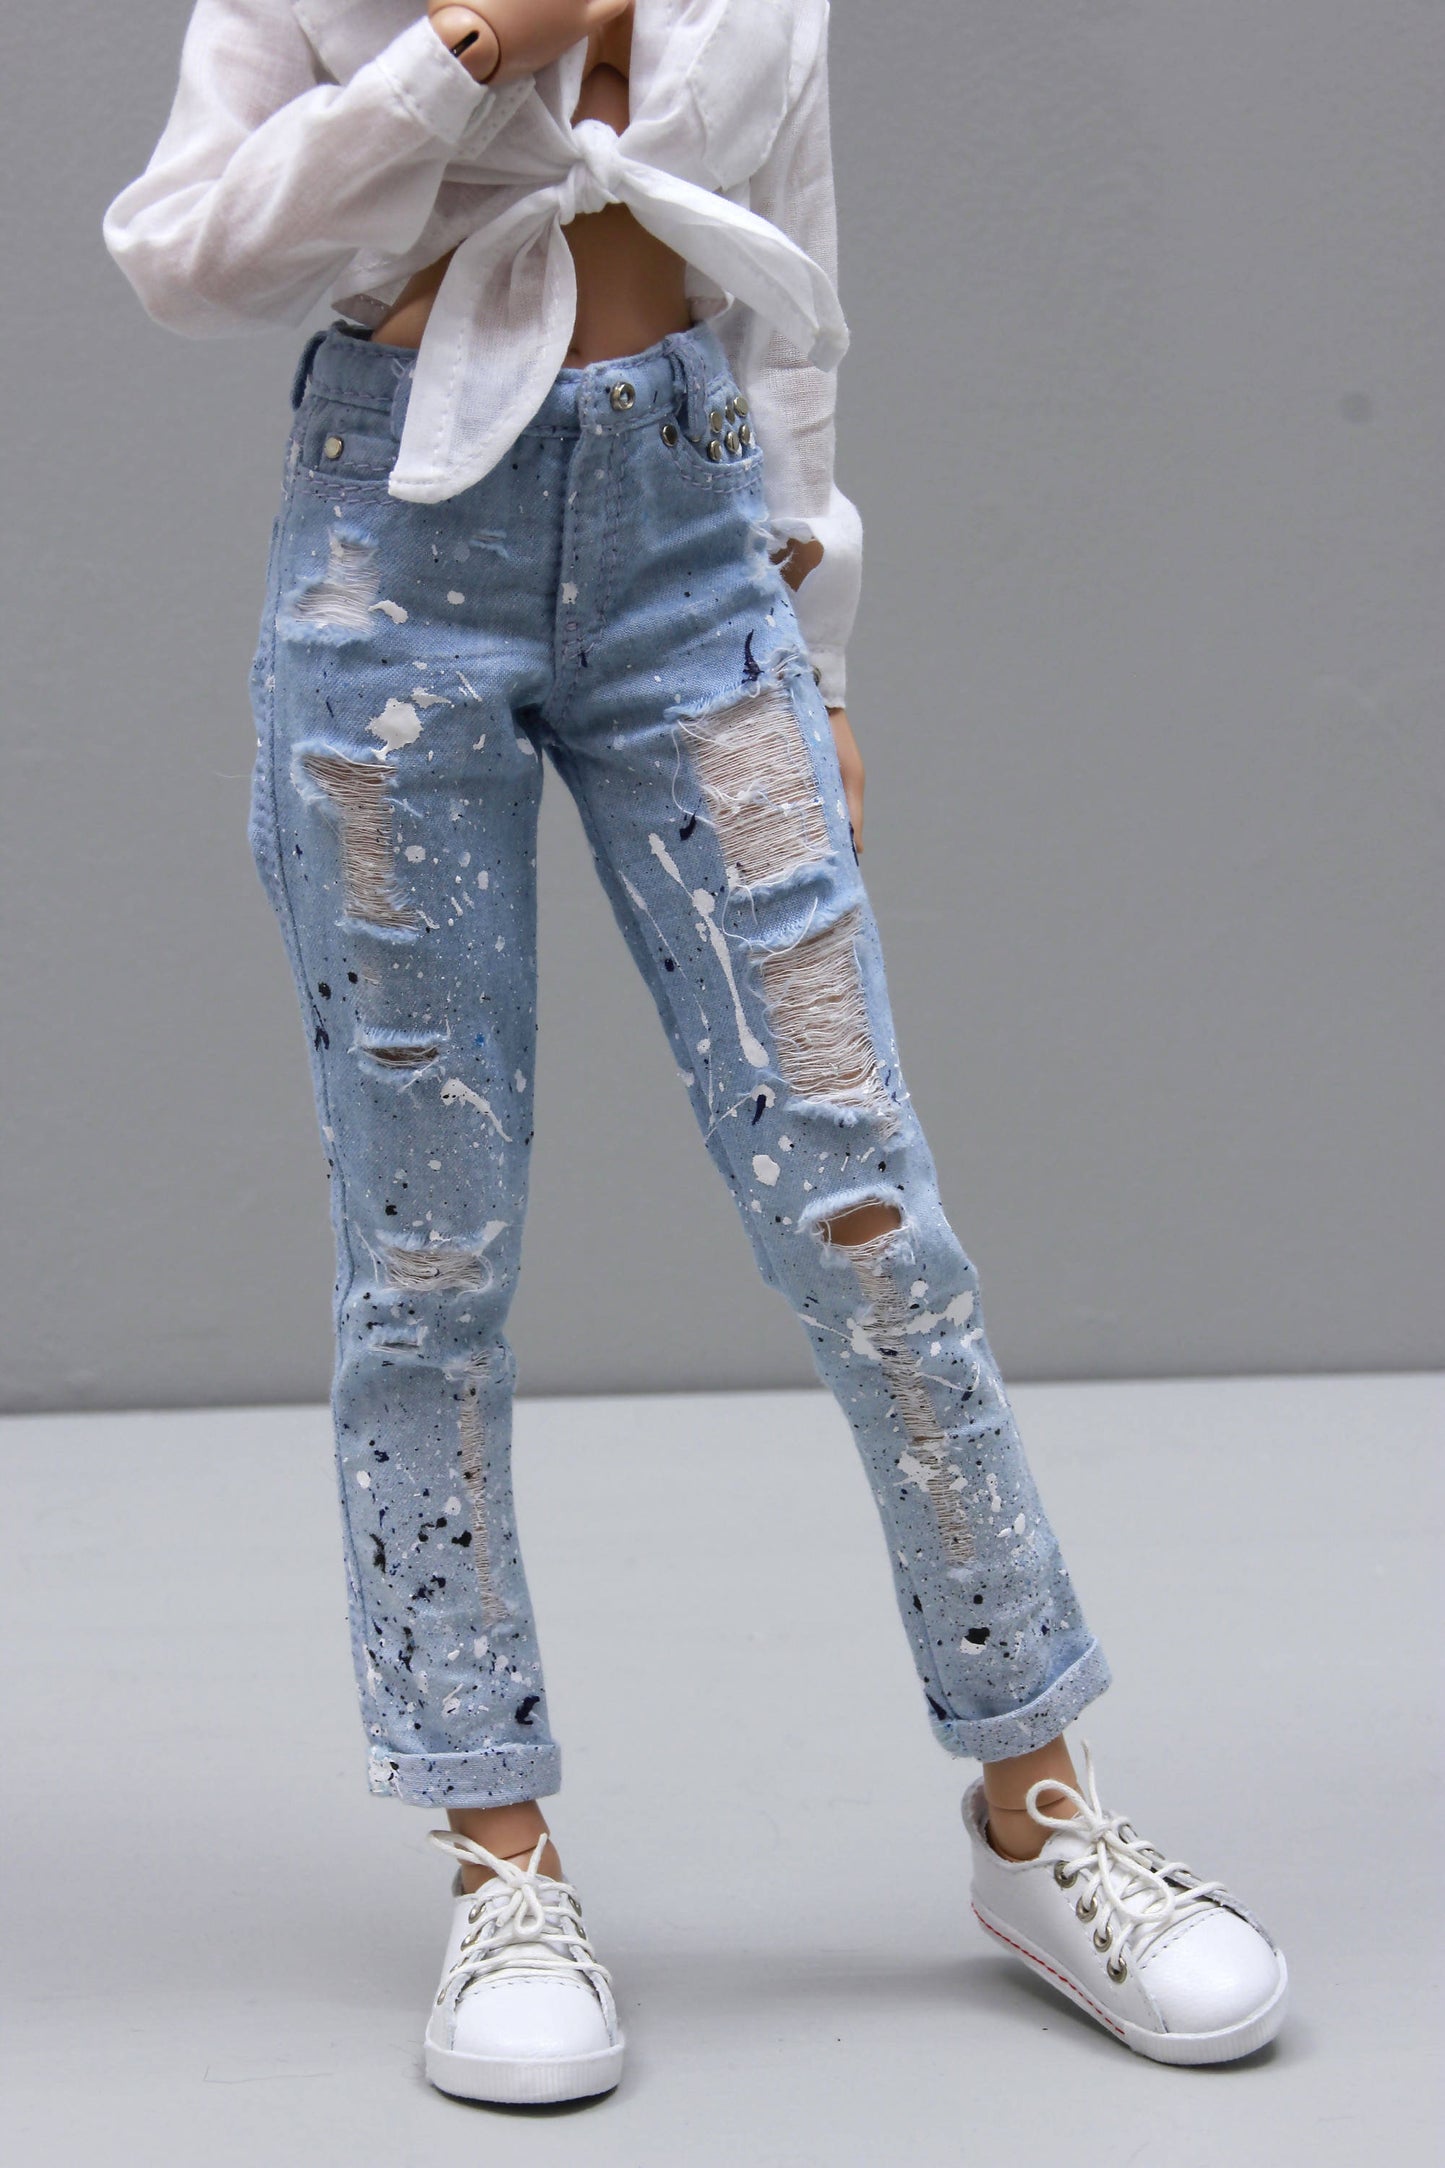 Jeans for Minifee, Black and white splashes, 1/4 MSD bjd